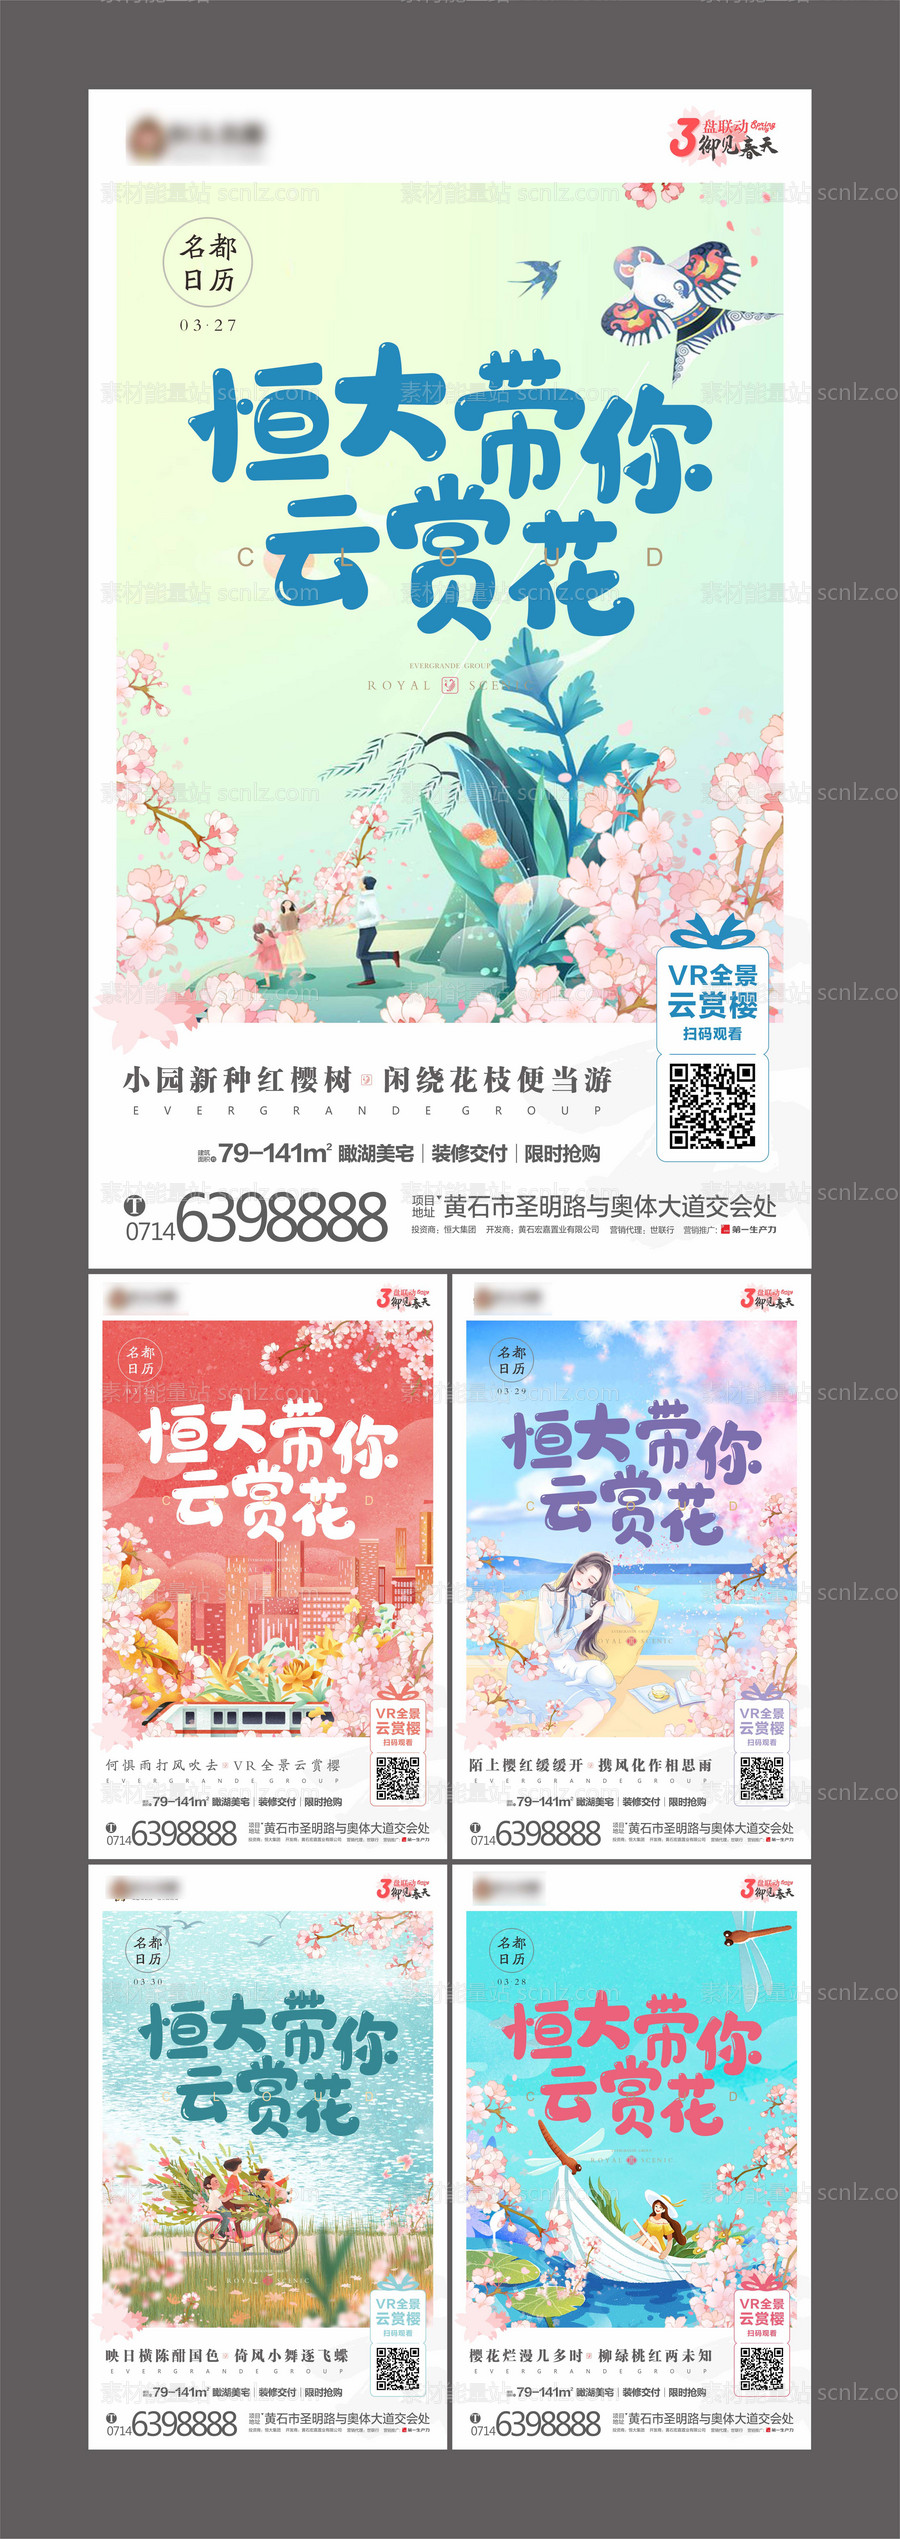 素材能量站-房地产云上赏樱花系列海报